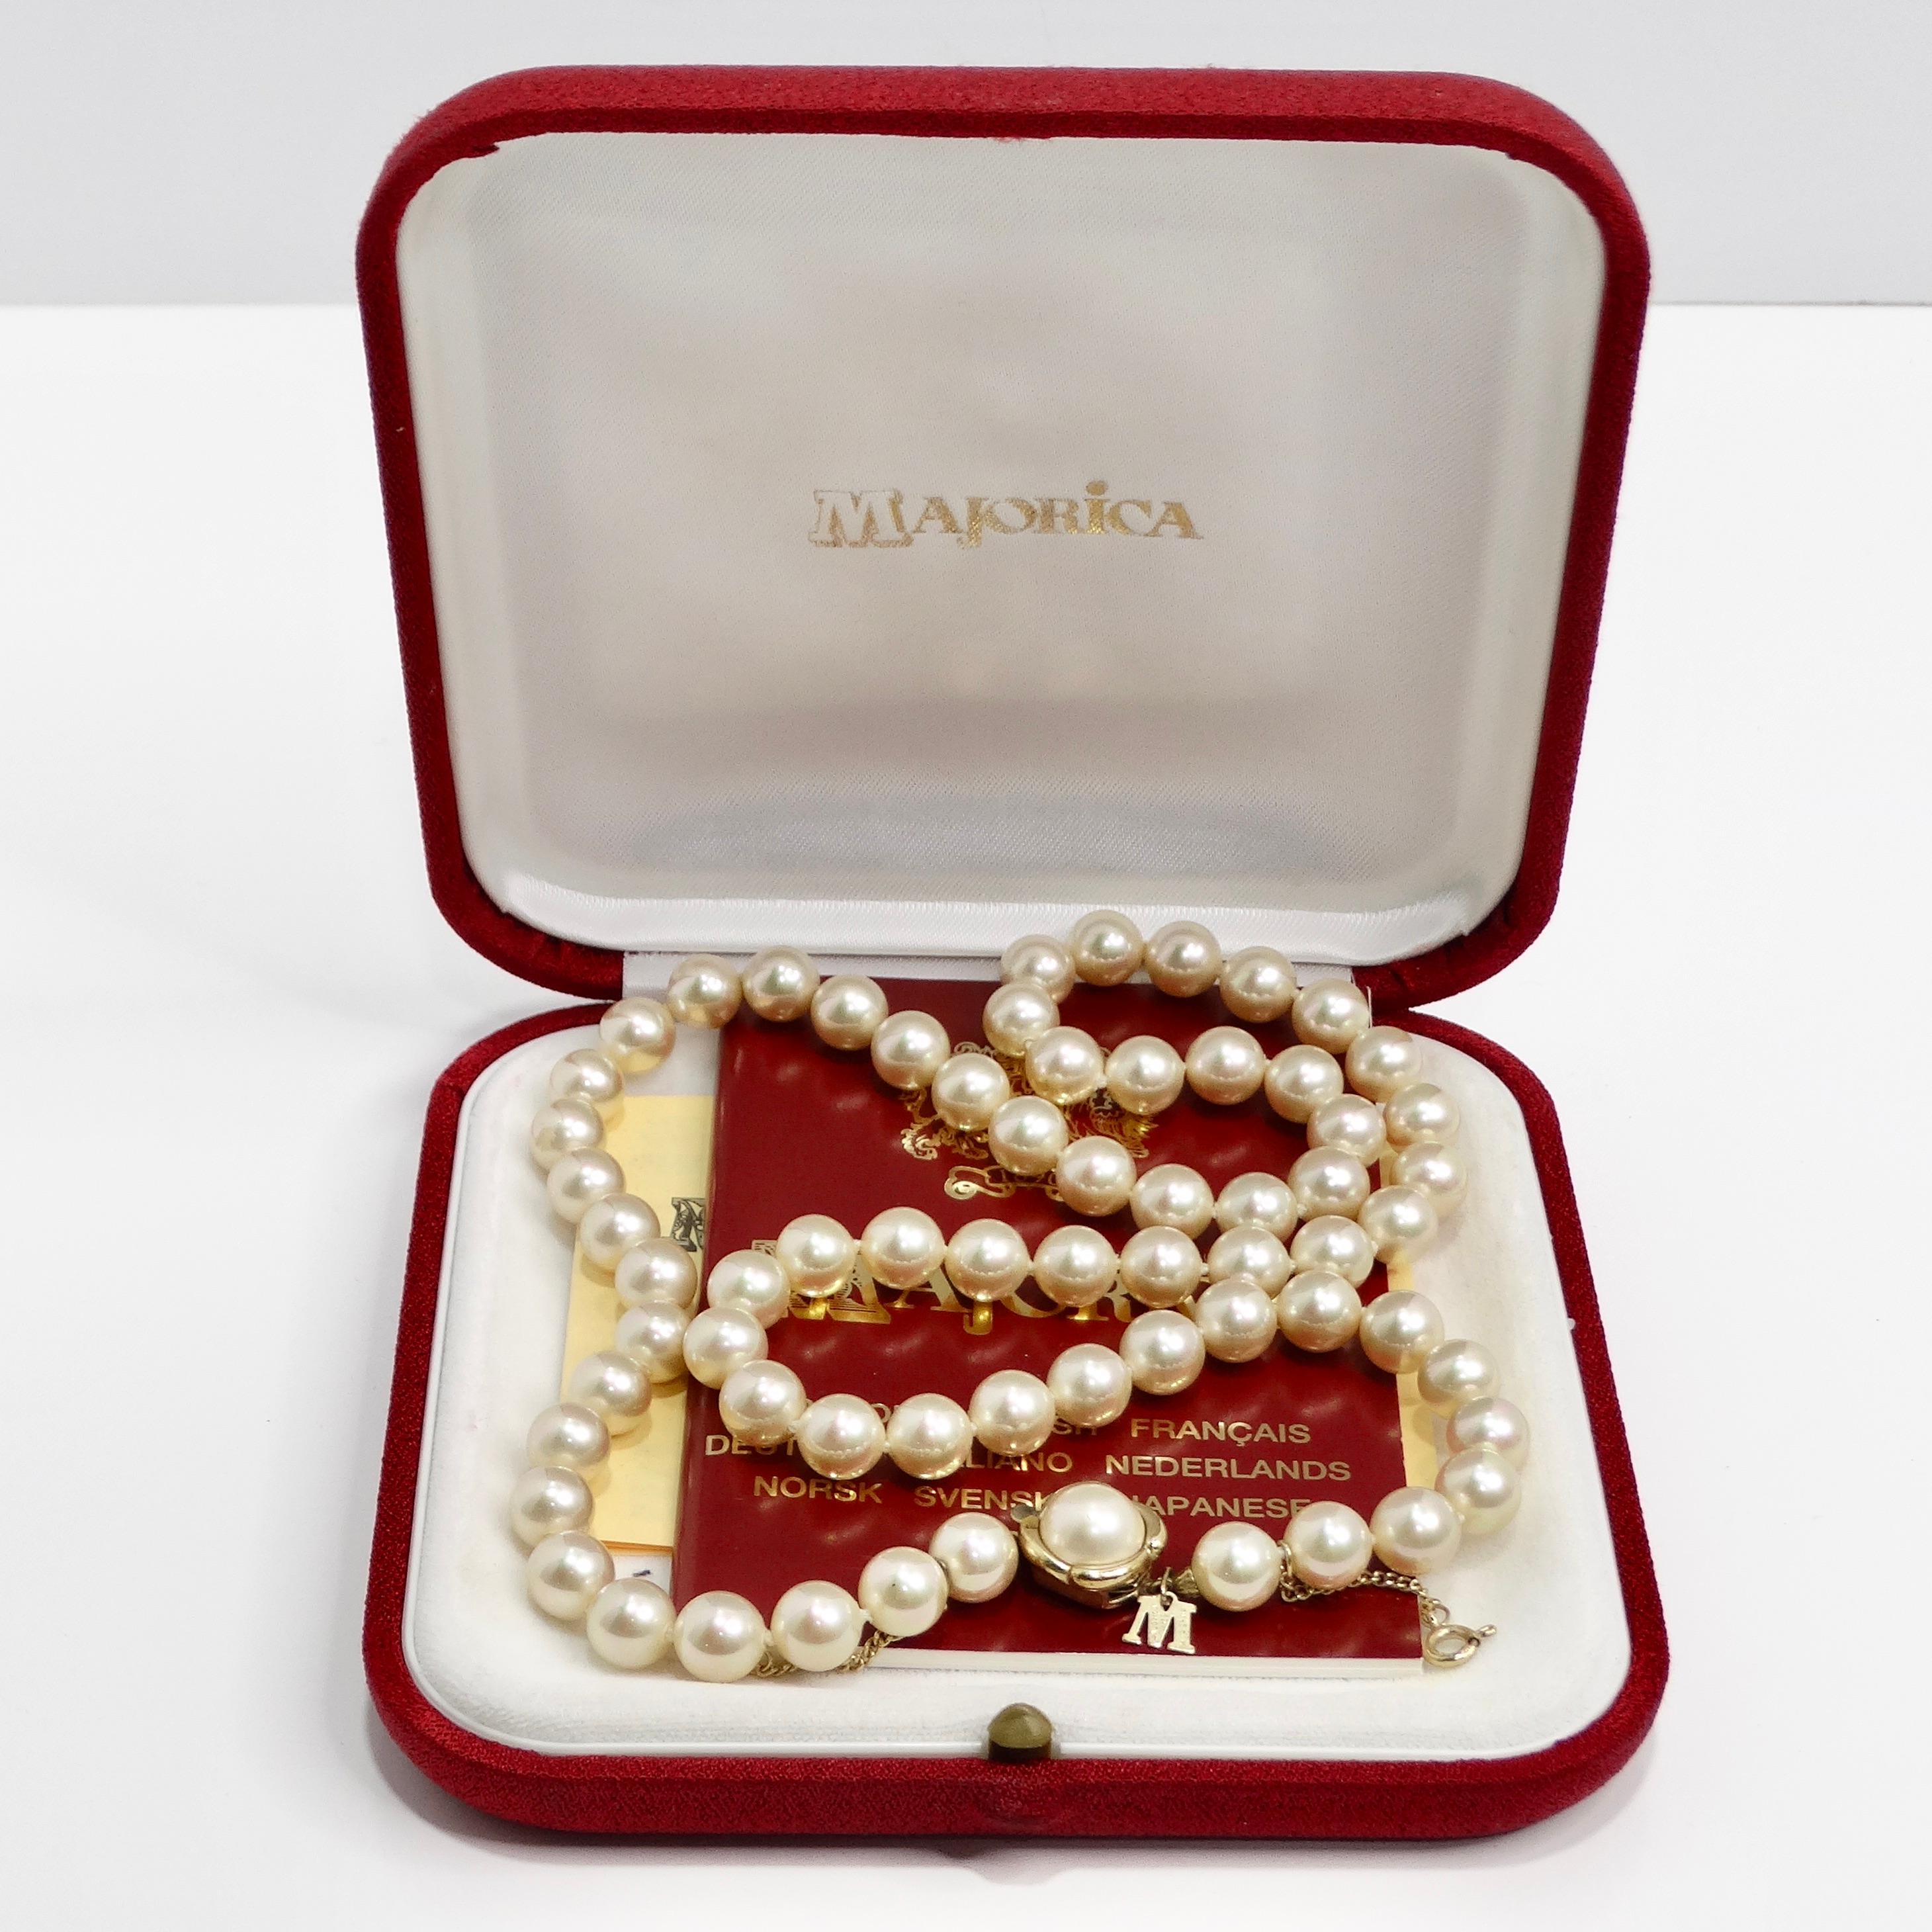 Voici le collier de perles en argent Majorca des années 1980, un classique vintage qui respire l'élégance et la sophistication intemporelles. Ce collier exquis présente des perles blanches lustrées, réputées pour leur forme uniforme et leur surface